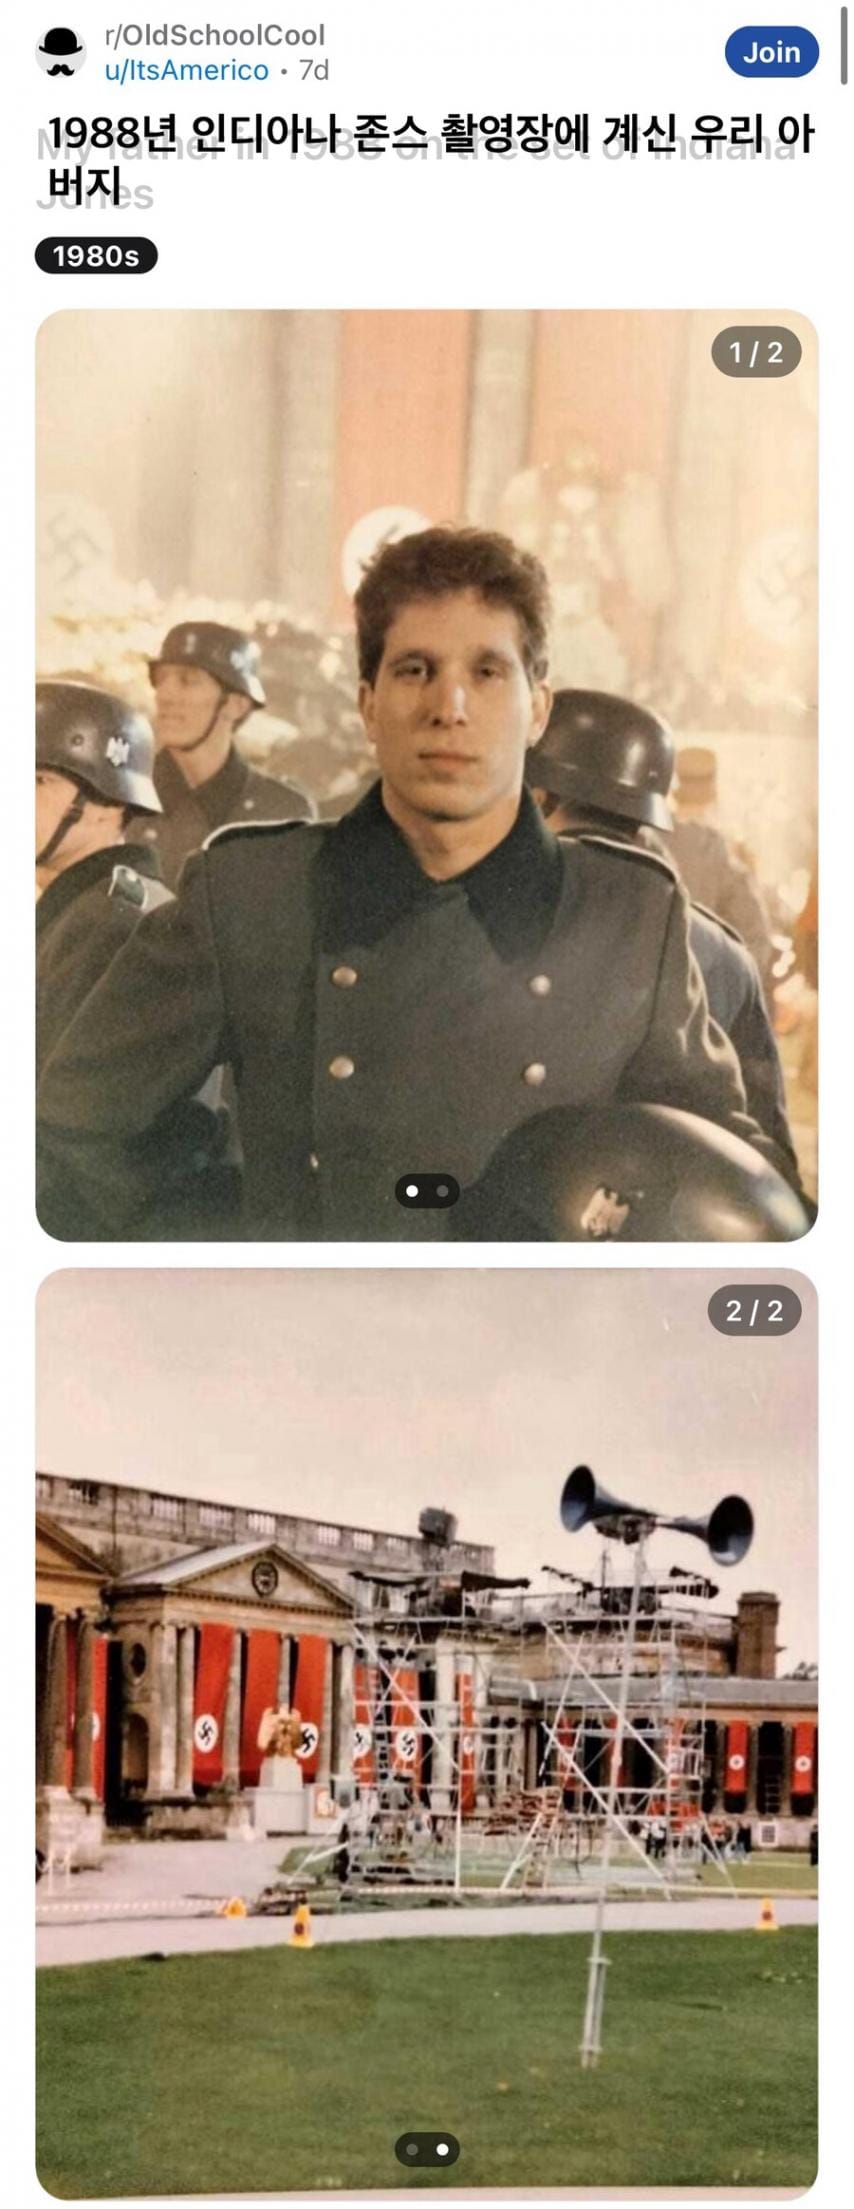 아버지가 나치 군복을 입고있는 사진을 발견한 미국인.jpg